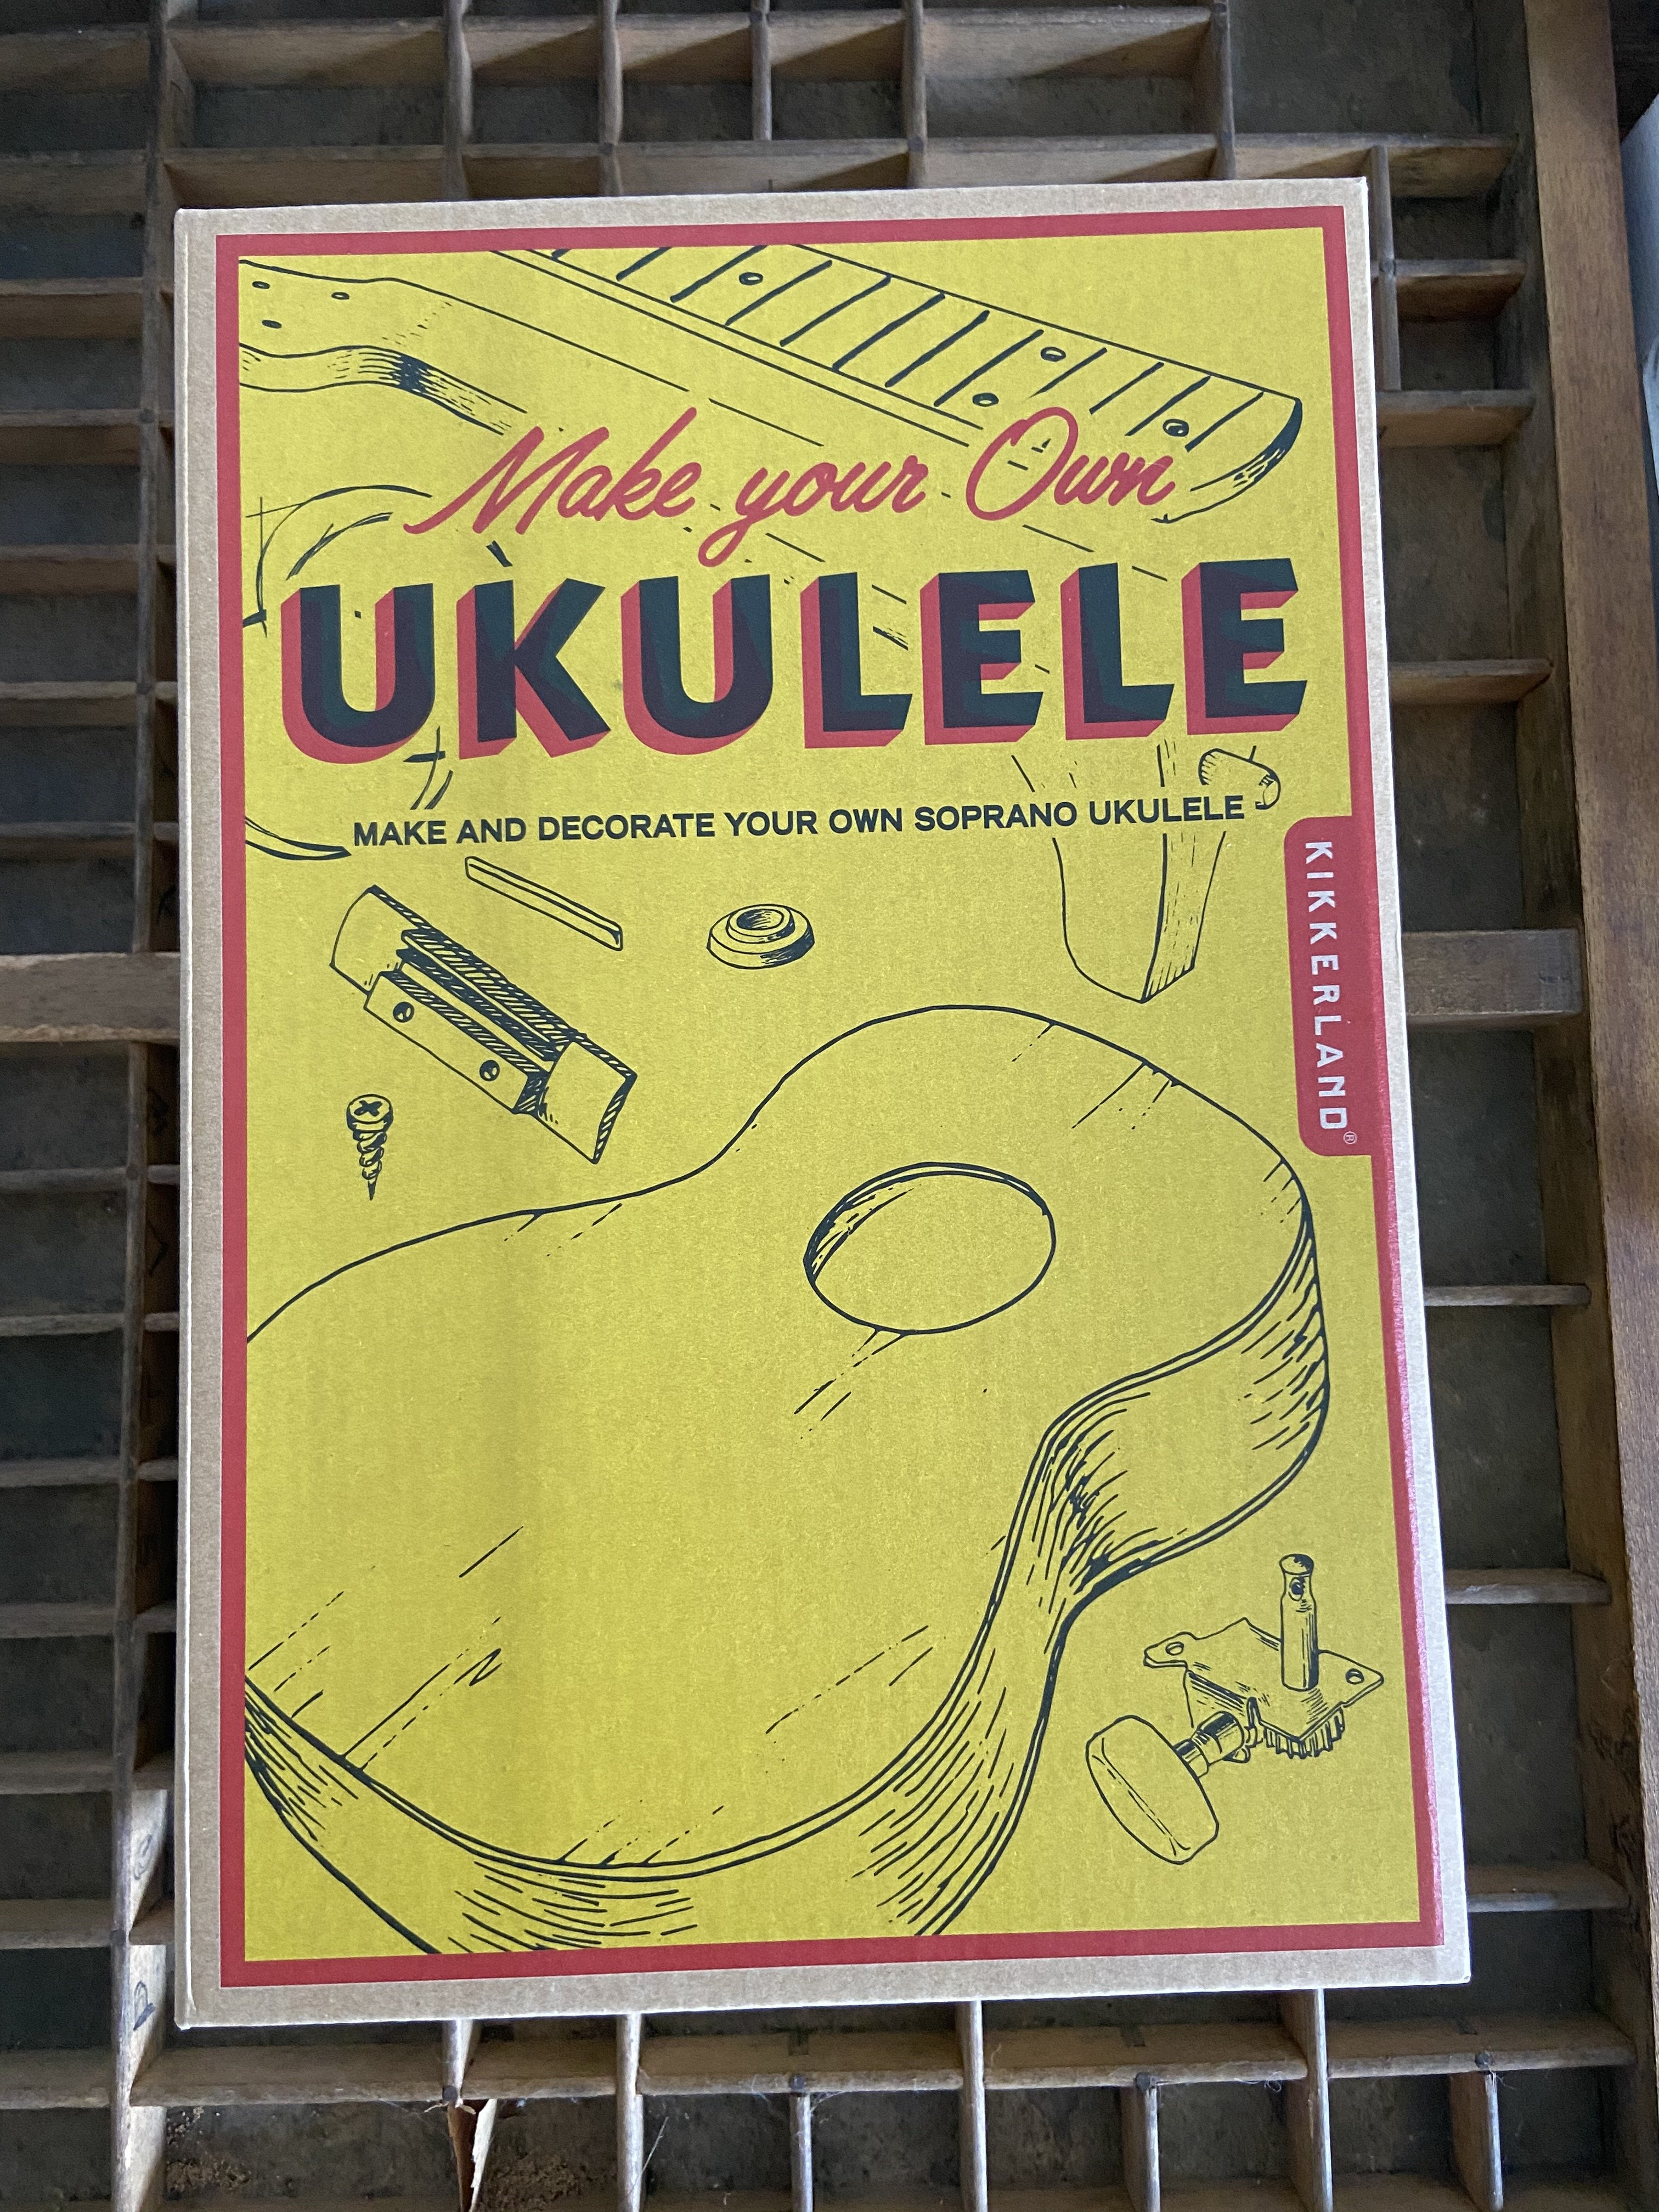 Build Your Own Ukulele! Ukulele Bradley &amp; Lily 